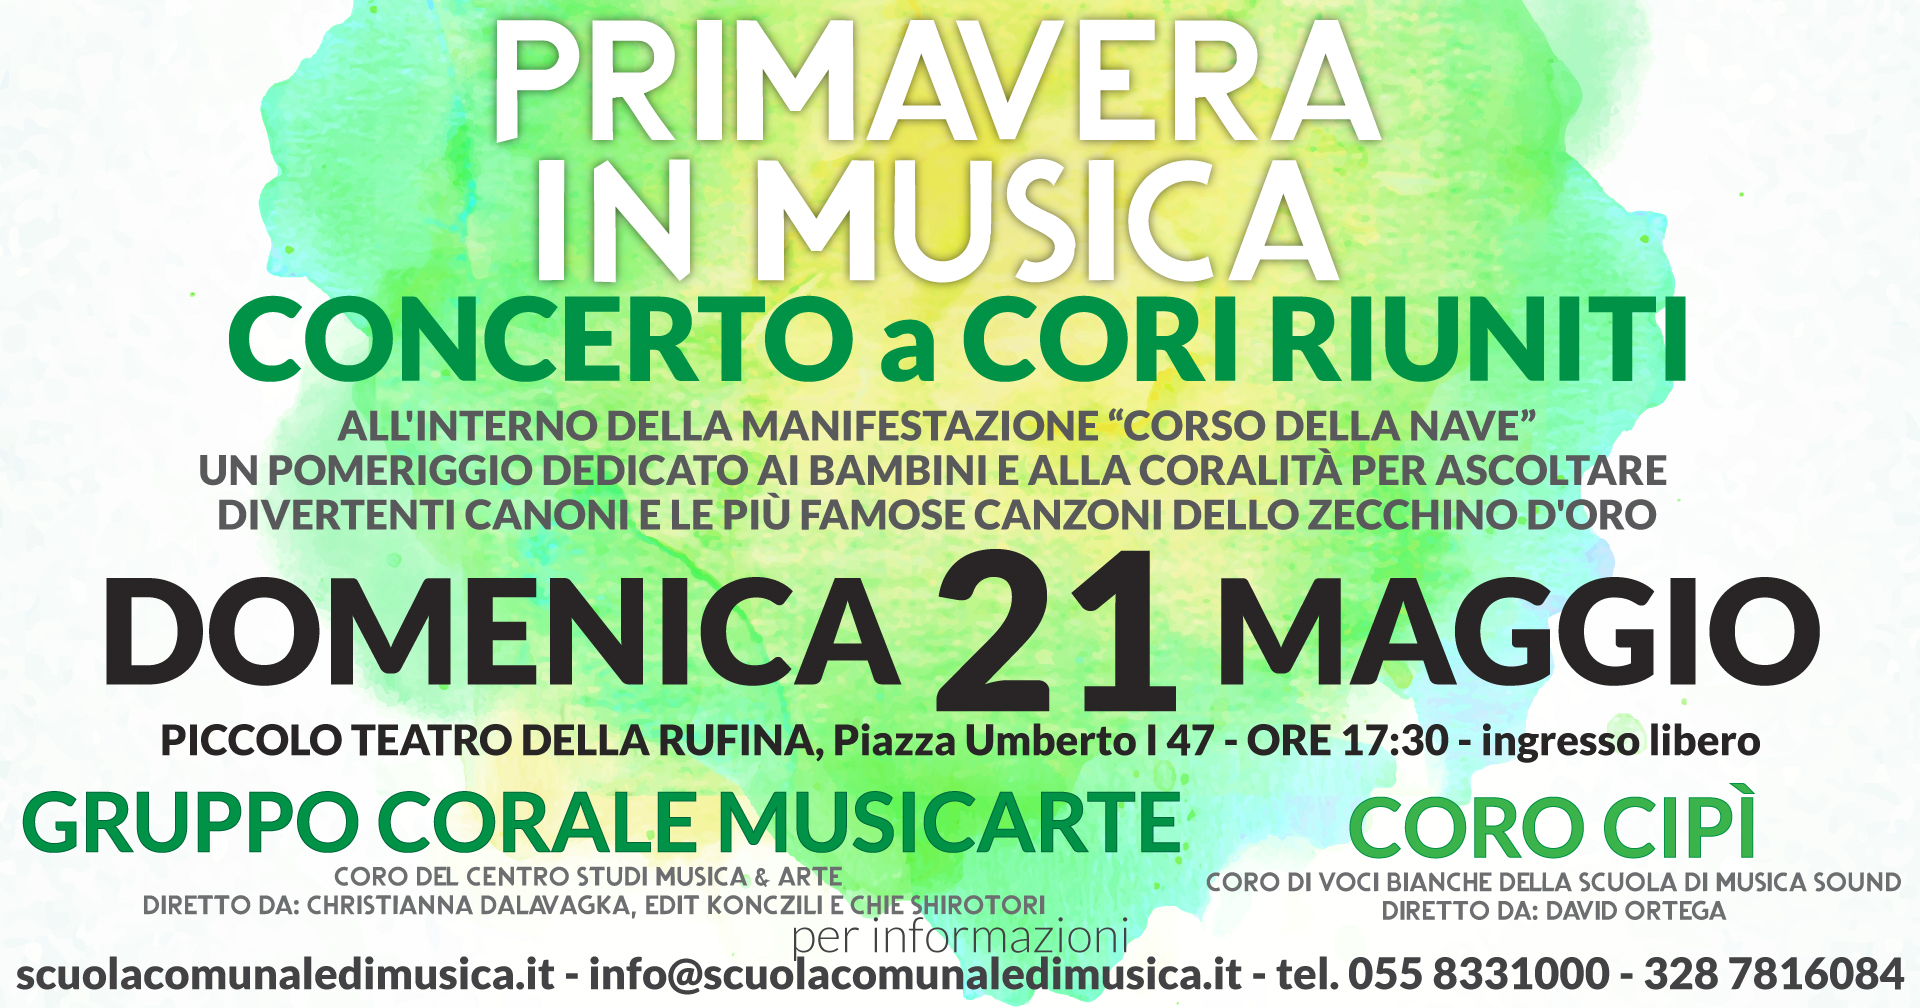 Primavera in musica – Concerto a cori riuniti 21 Maggio ore 17:30 Piccolo teatro della Rufina